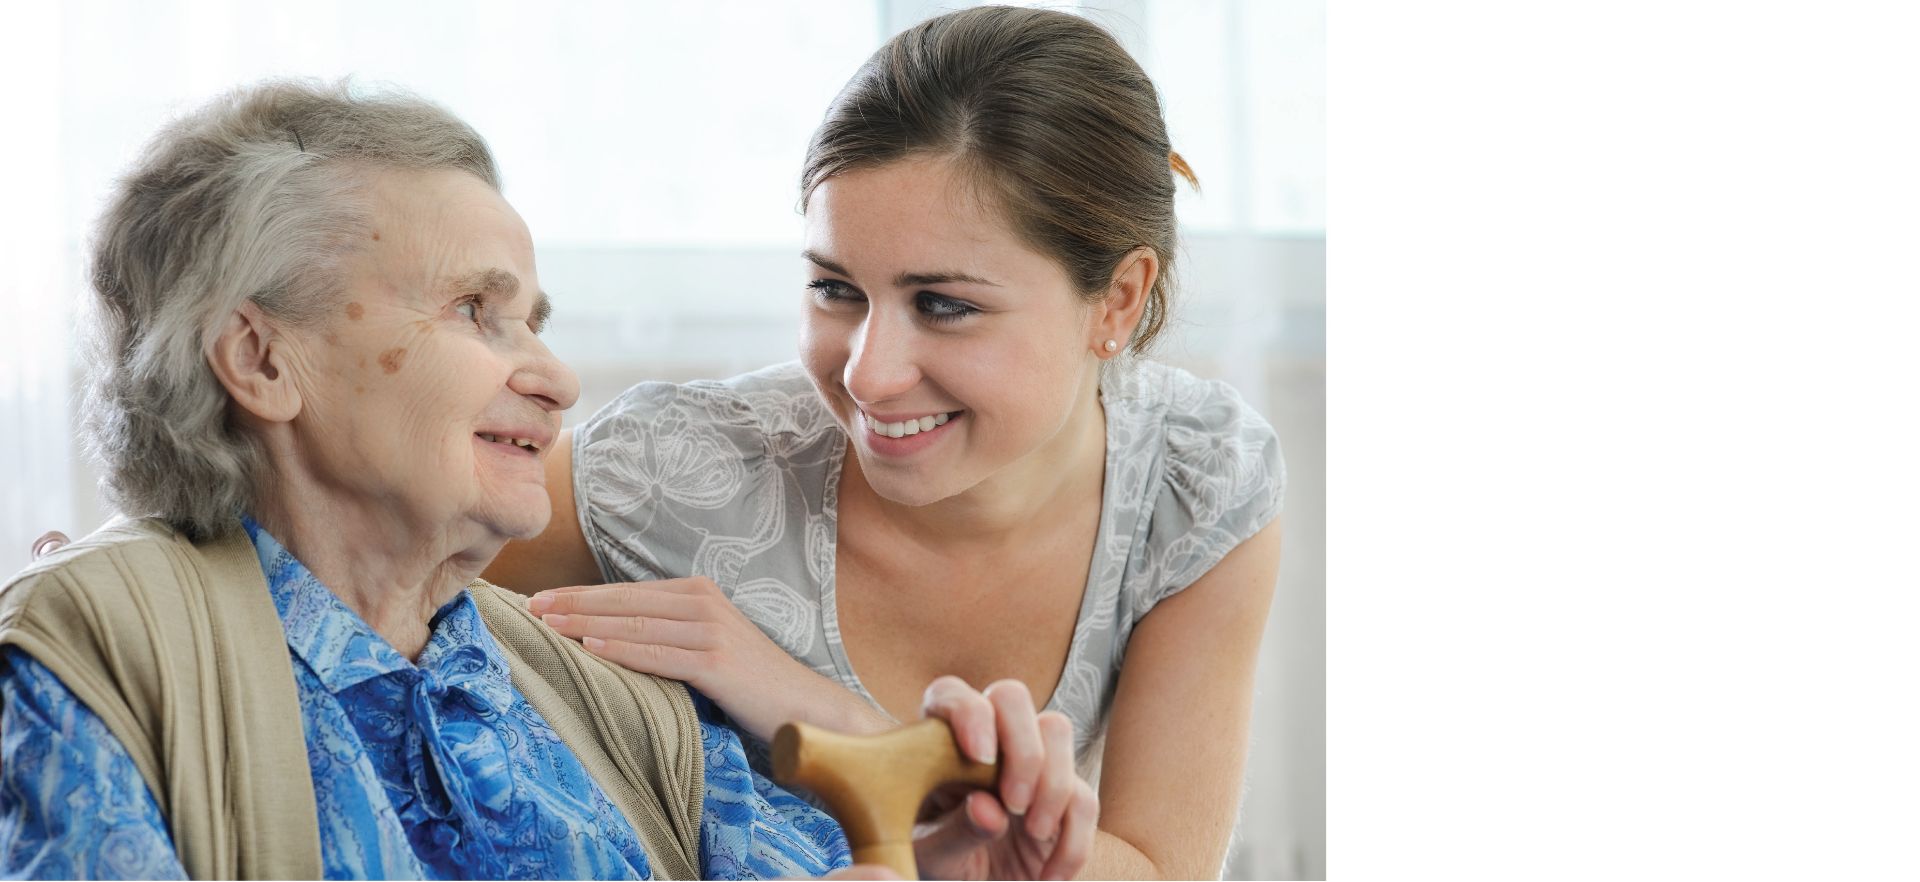 Îngrijirea persoanelor vârstnice: soluţii, standarde, dar și bunăvoinţă